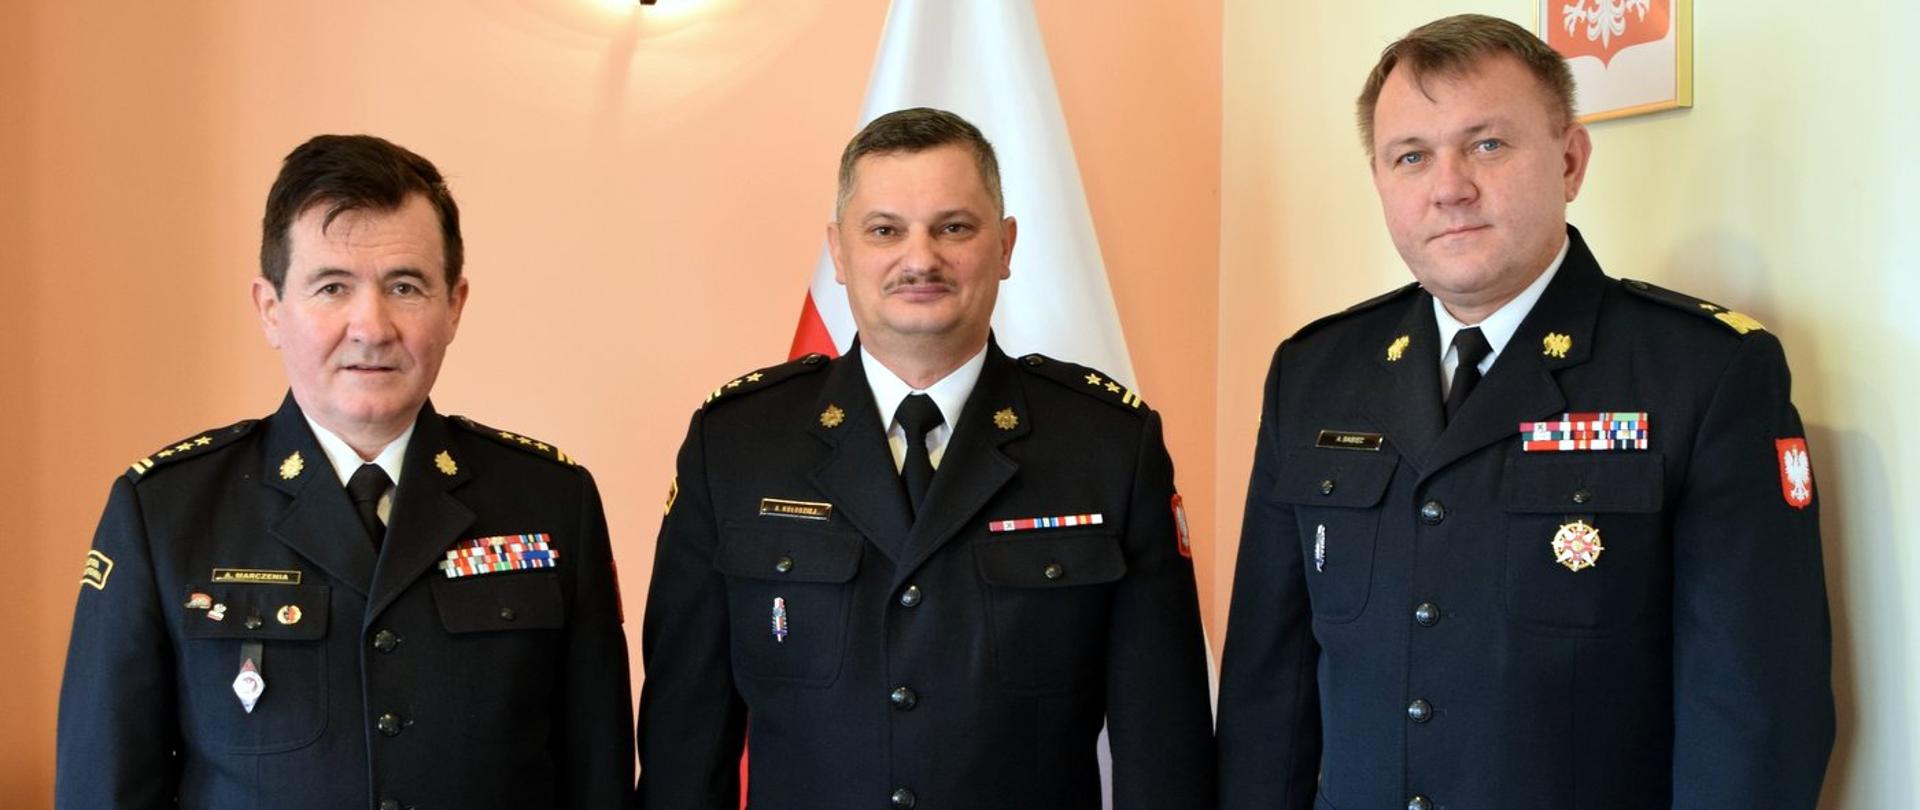 Zdjęcie zrobione wewnątrz pomieszczenia. Na zdjęciu trzech oficerów Państwowej Straży Pożarnej w mundurach wyjściowych.